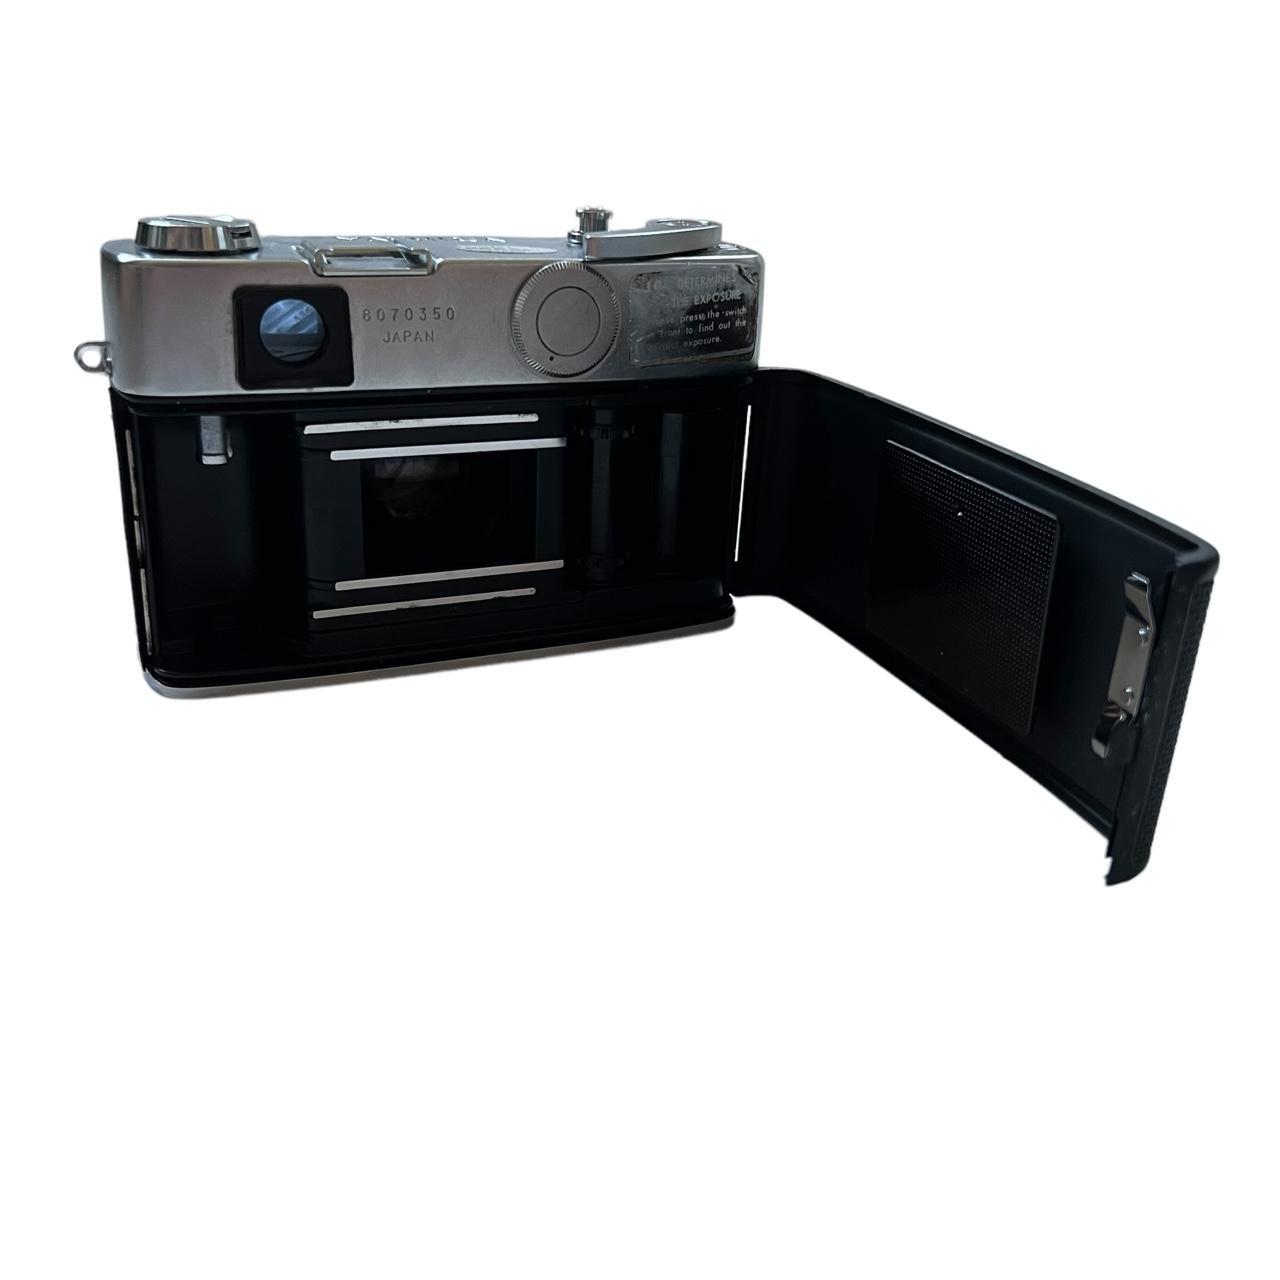 Product Image 4 - Yashica Lynx 5000E

~range finder camera